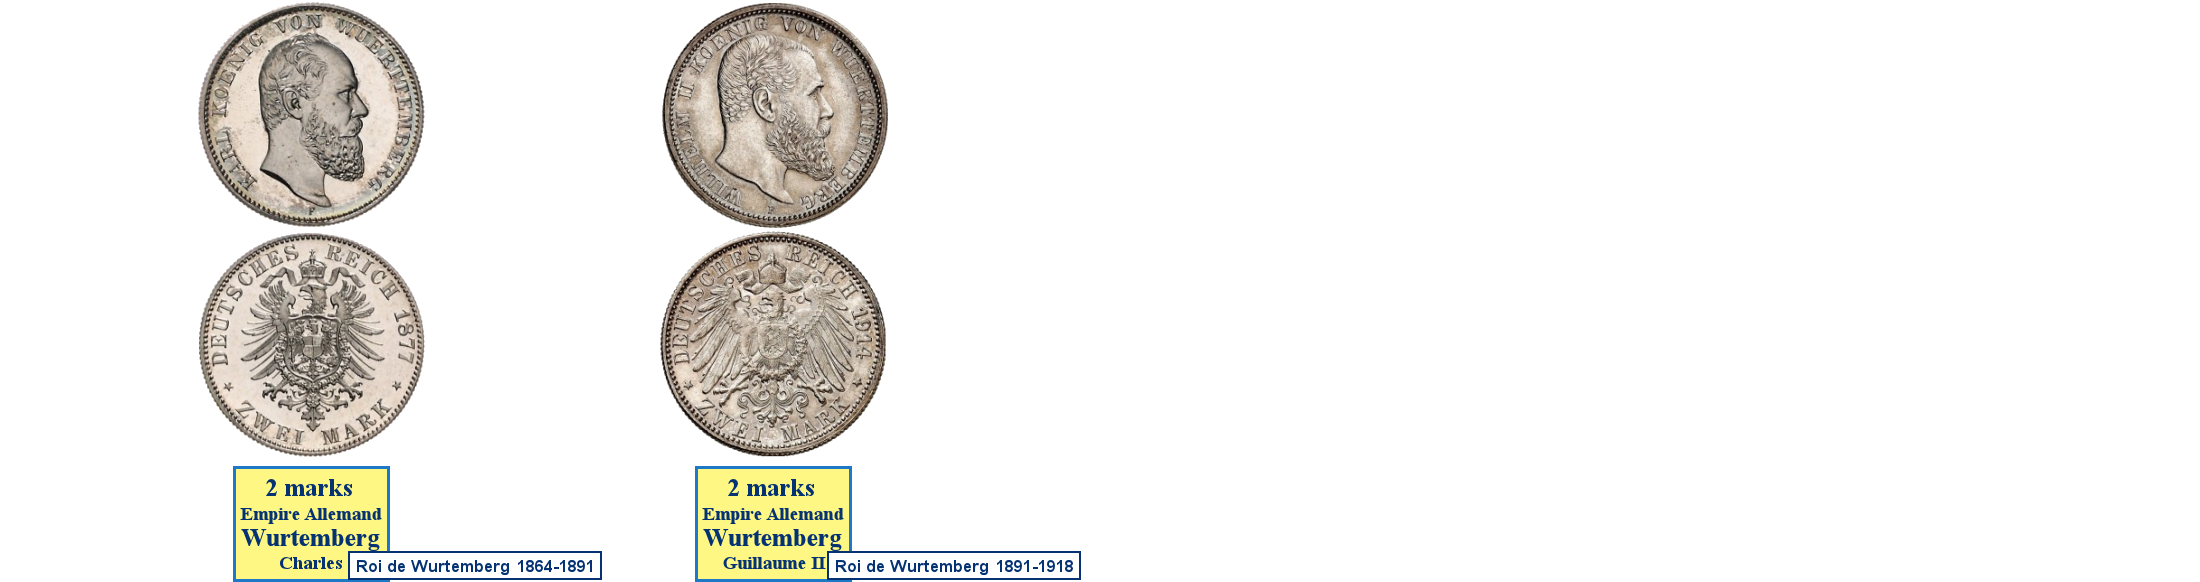 Photos de pièces de monnaies du Royaume de Wurtemberg dans l'Empire Allemand